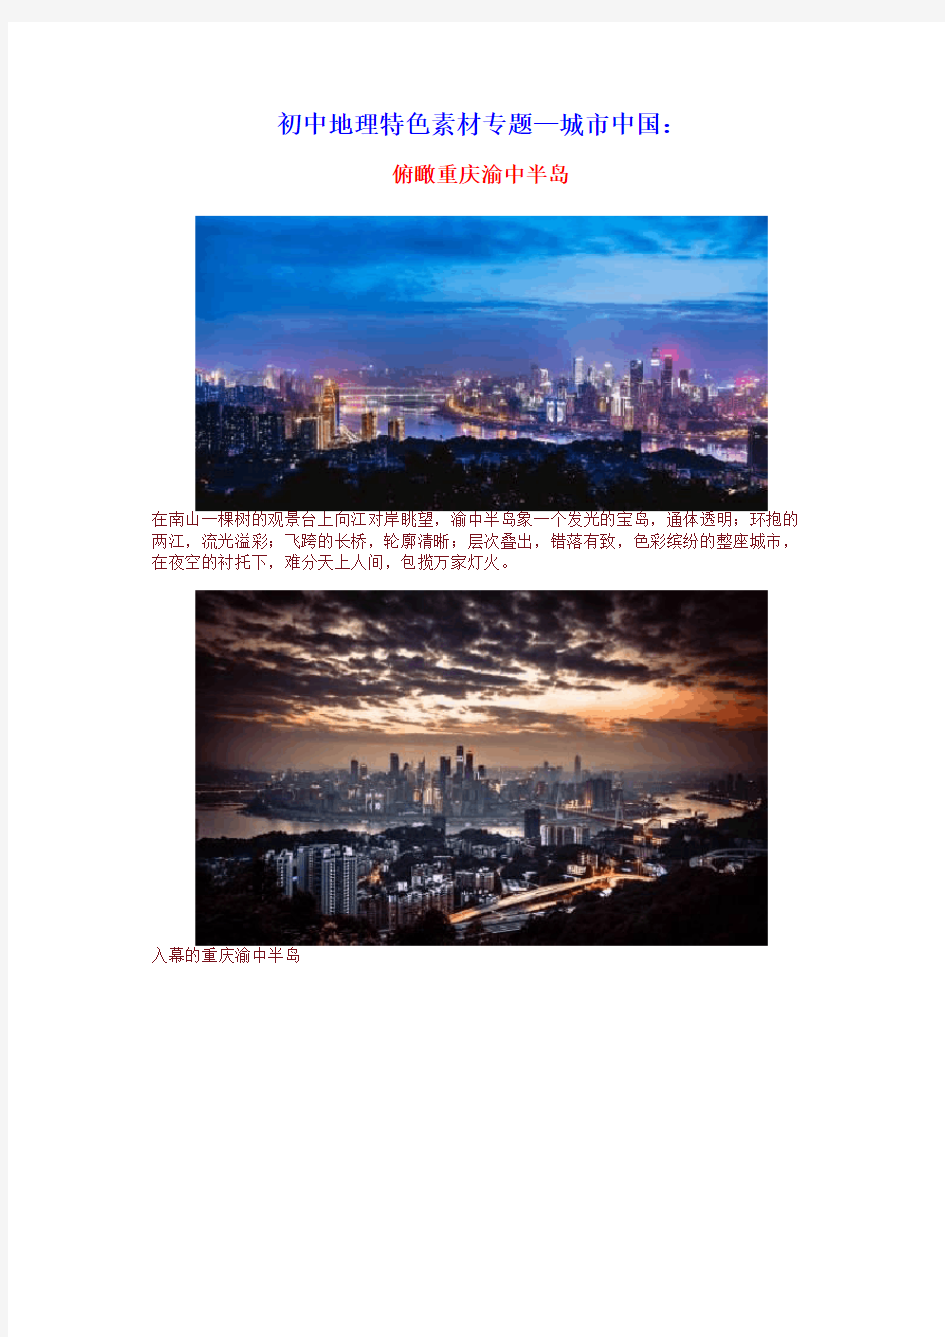 初中地理特色素材专题—城市中国(第三期)俯瞰重庆渝中半岛